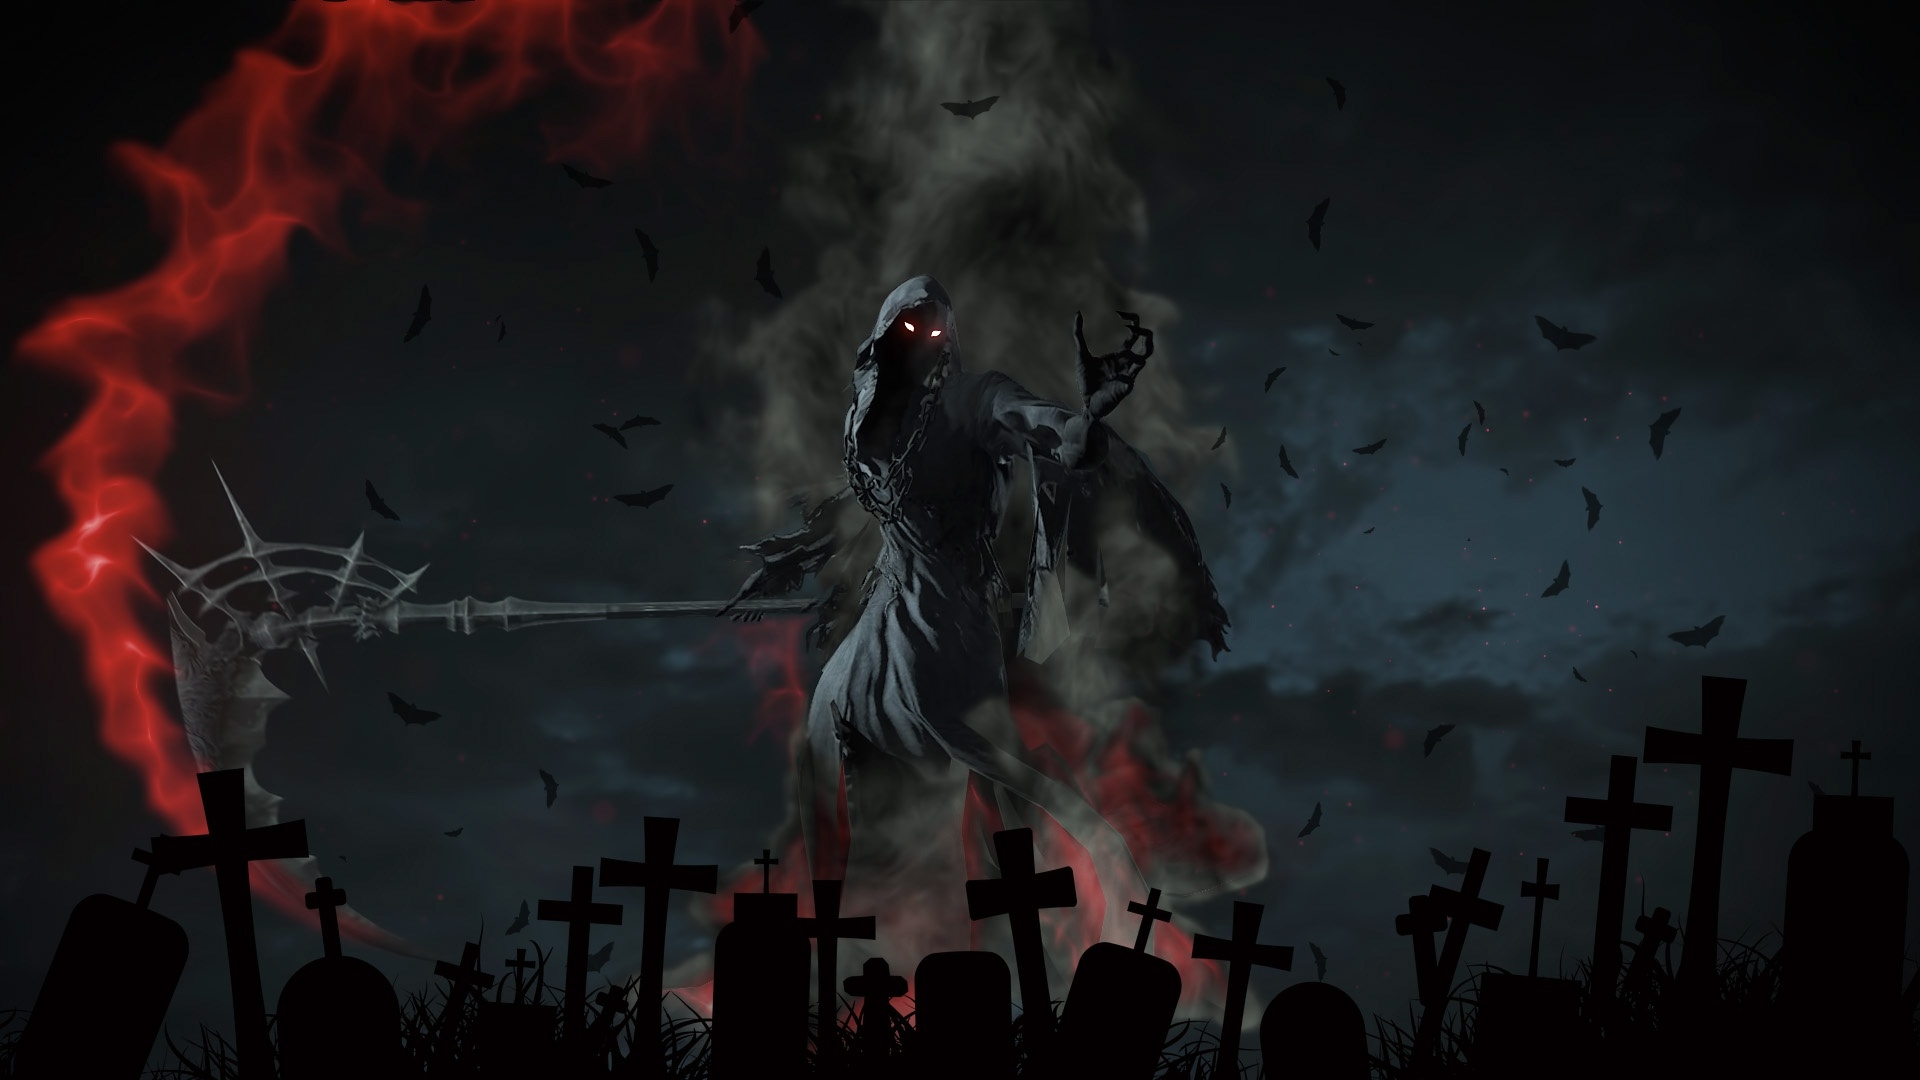 Grim Reaper Artwork Wallpaper, HD Fantasy 4K Wallpapers, Images, Photos